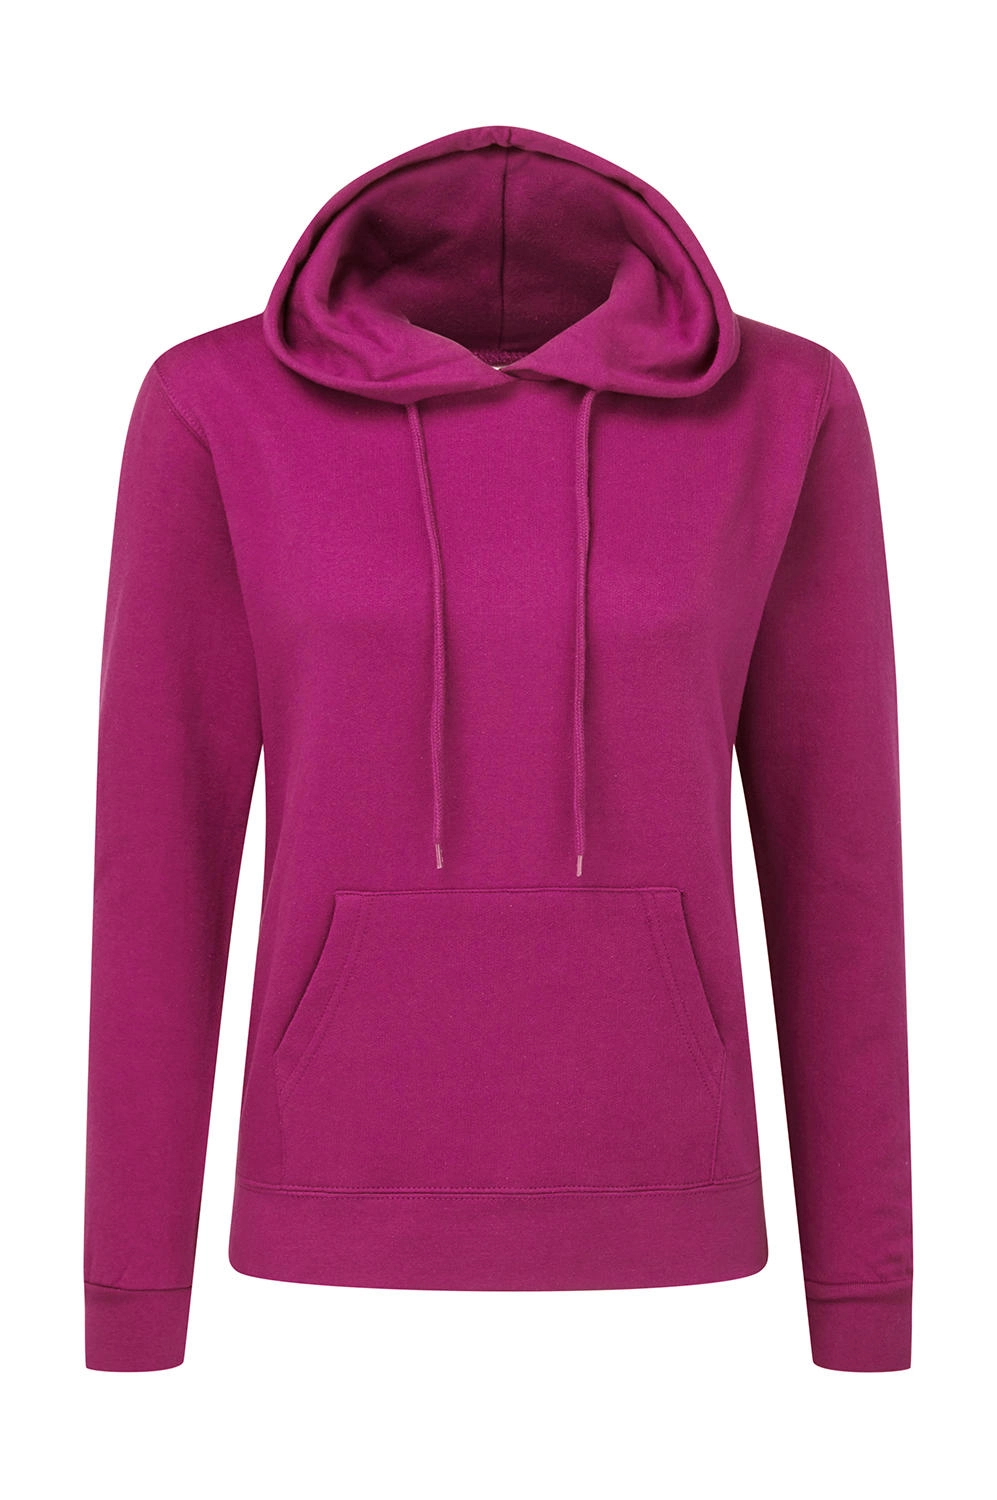 Hooded Sweatshirt Women zum Besticken und Bedrucken in der Farbe Dark Pink mit Ihren Logo, Schriftzug oder Motiv.